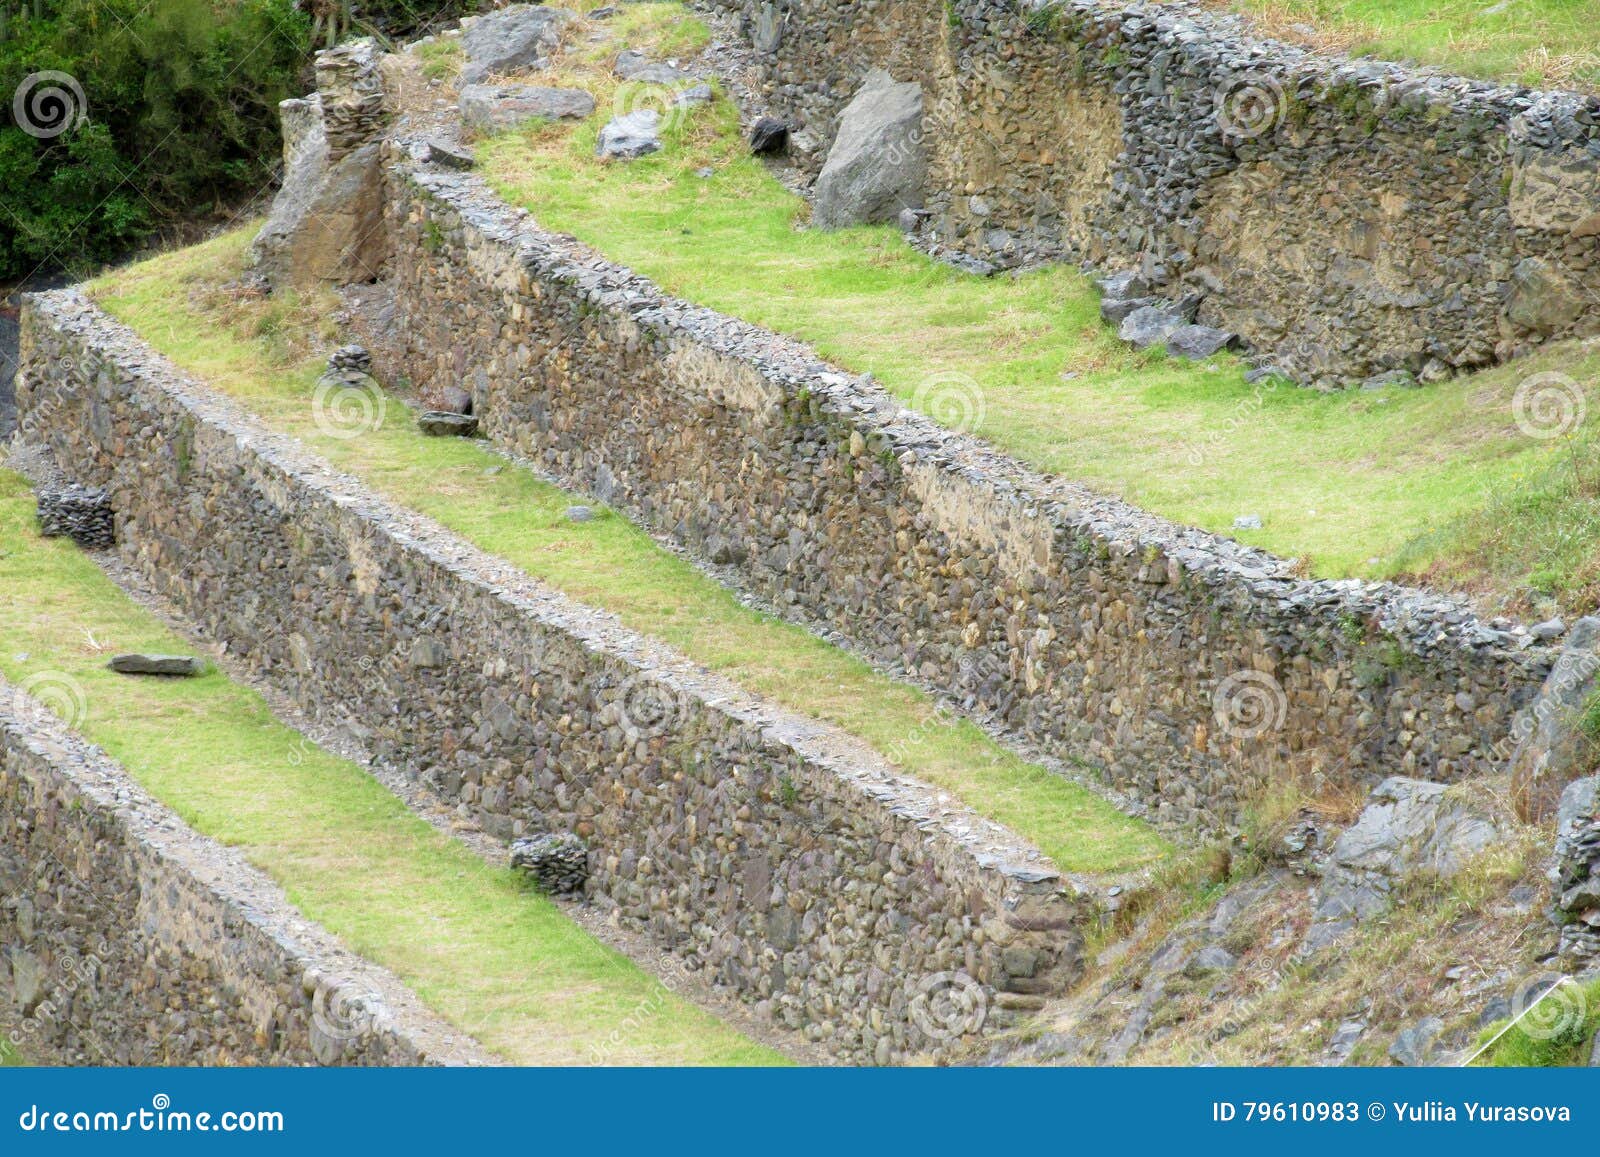 inca ruins ollantaytambo terraces, peru